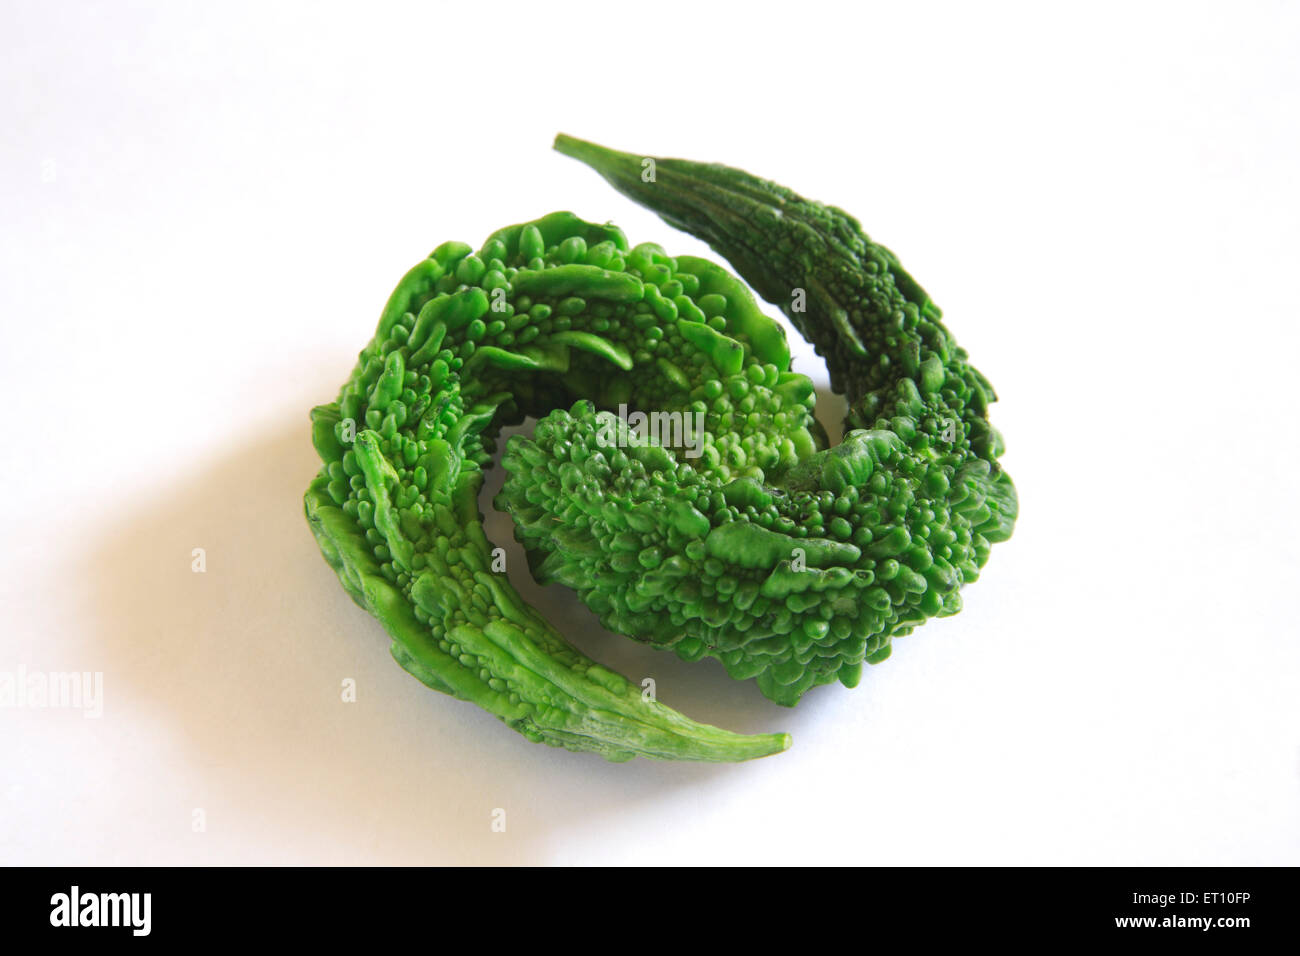 Green vegetable ; karela bitter gourd momordica charantia on white background Stock Photo